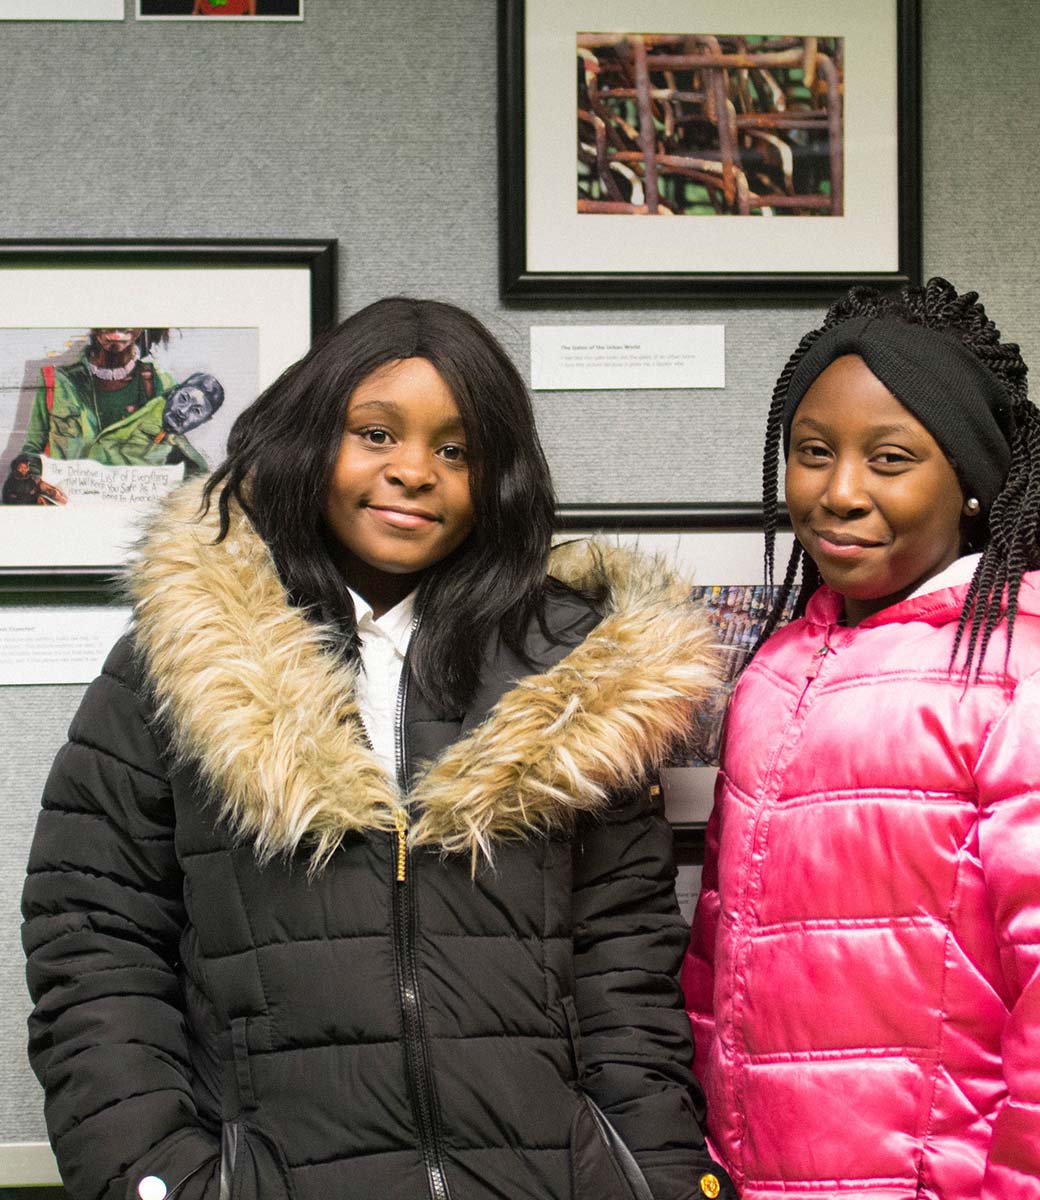 تنمية الشباب - امرأتان شابتان في معرض الصور